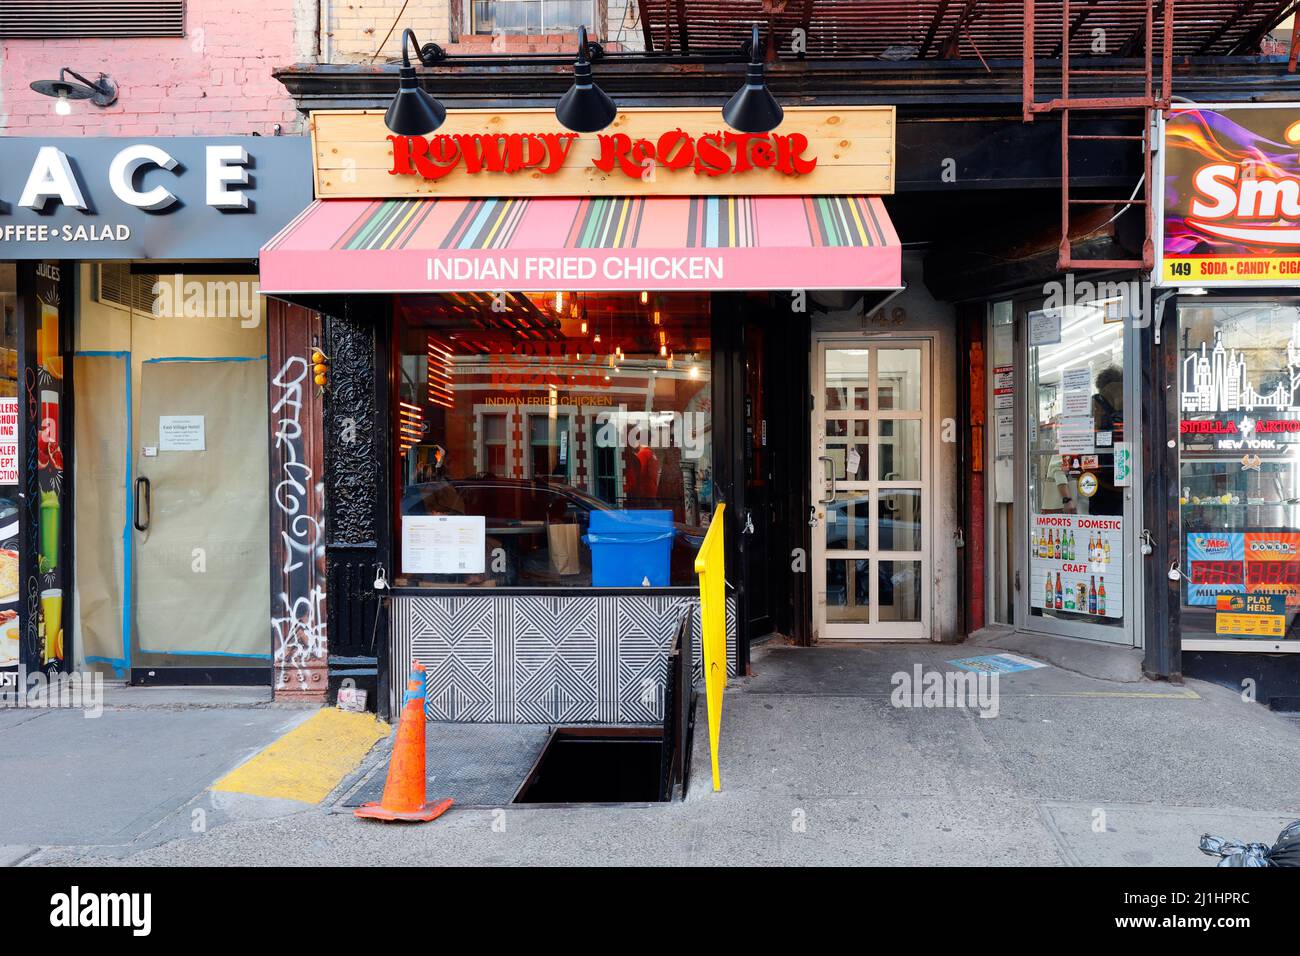 Rowdy Rooster, 149 1st Ave., New York, NYC photo d'un restaurant de poulet frit indien dans l'East Village de Manhattan. Banque D'Images